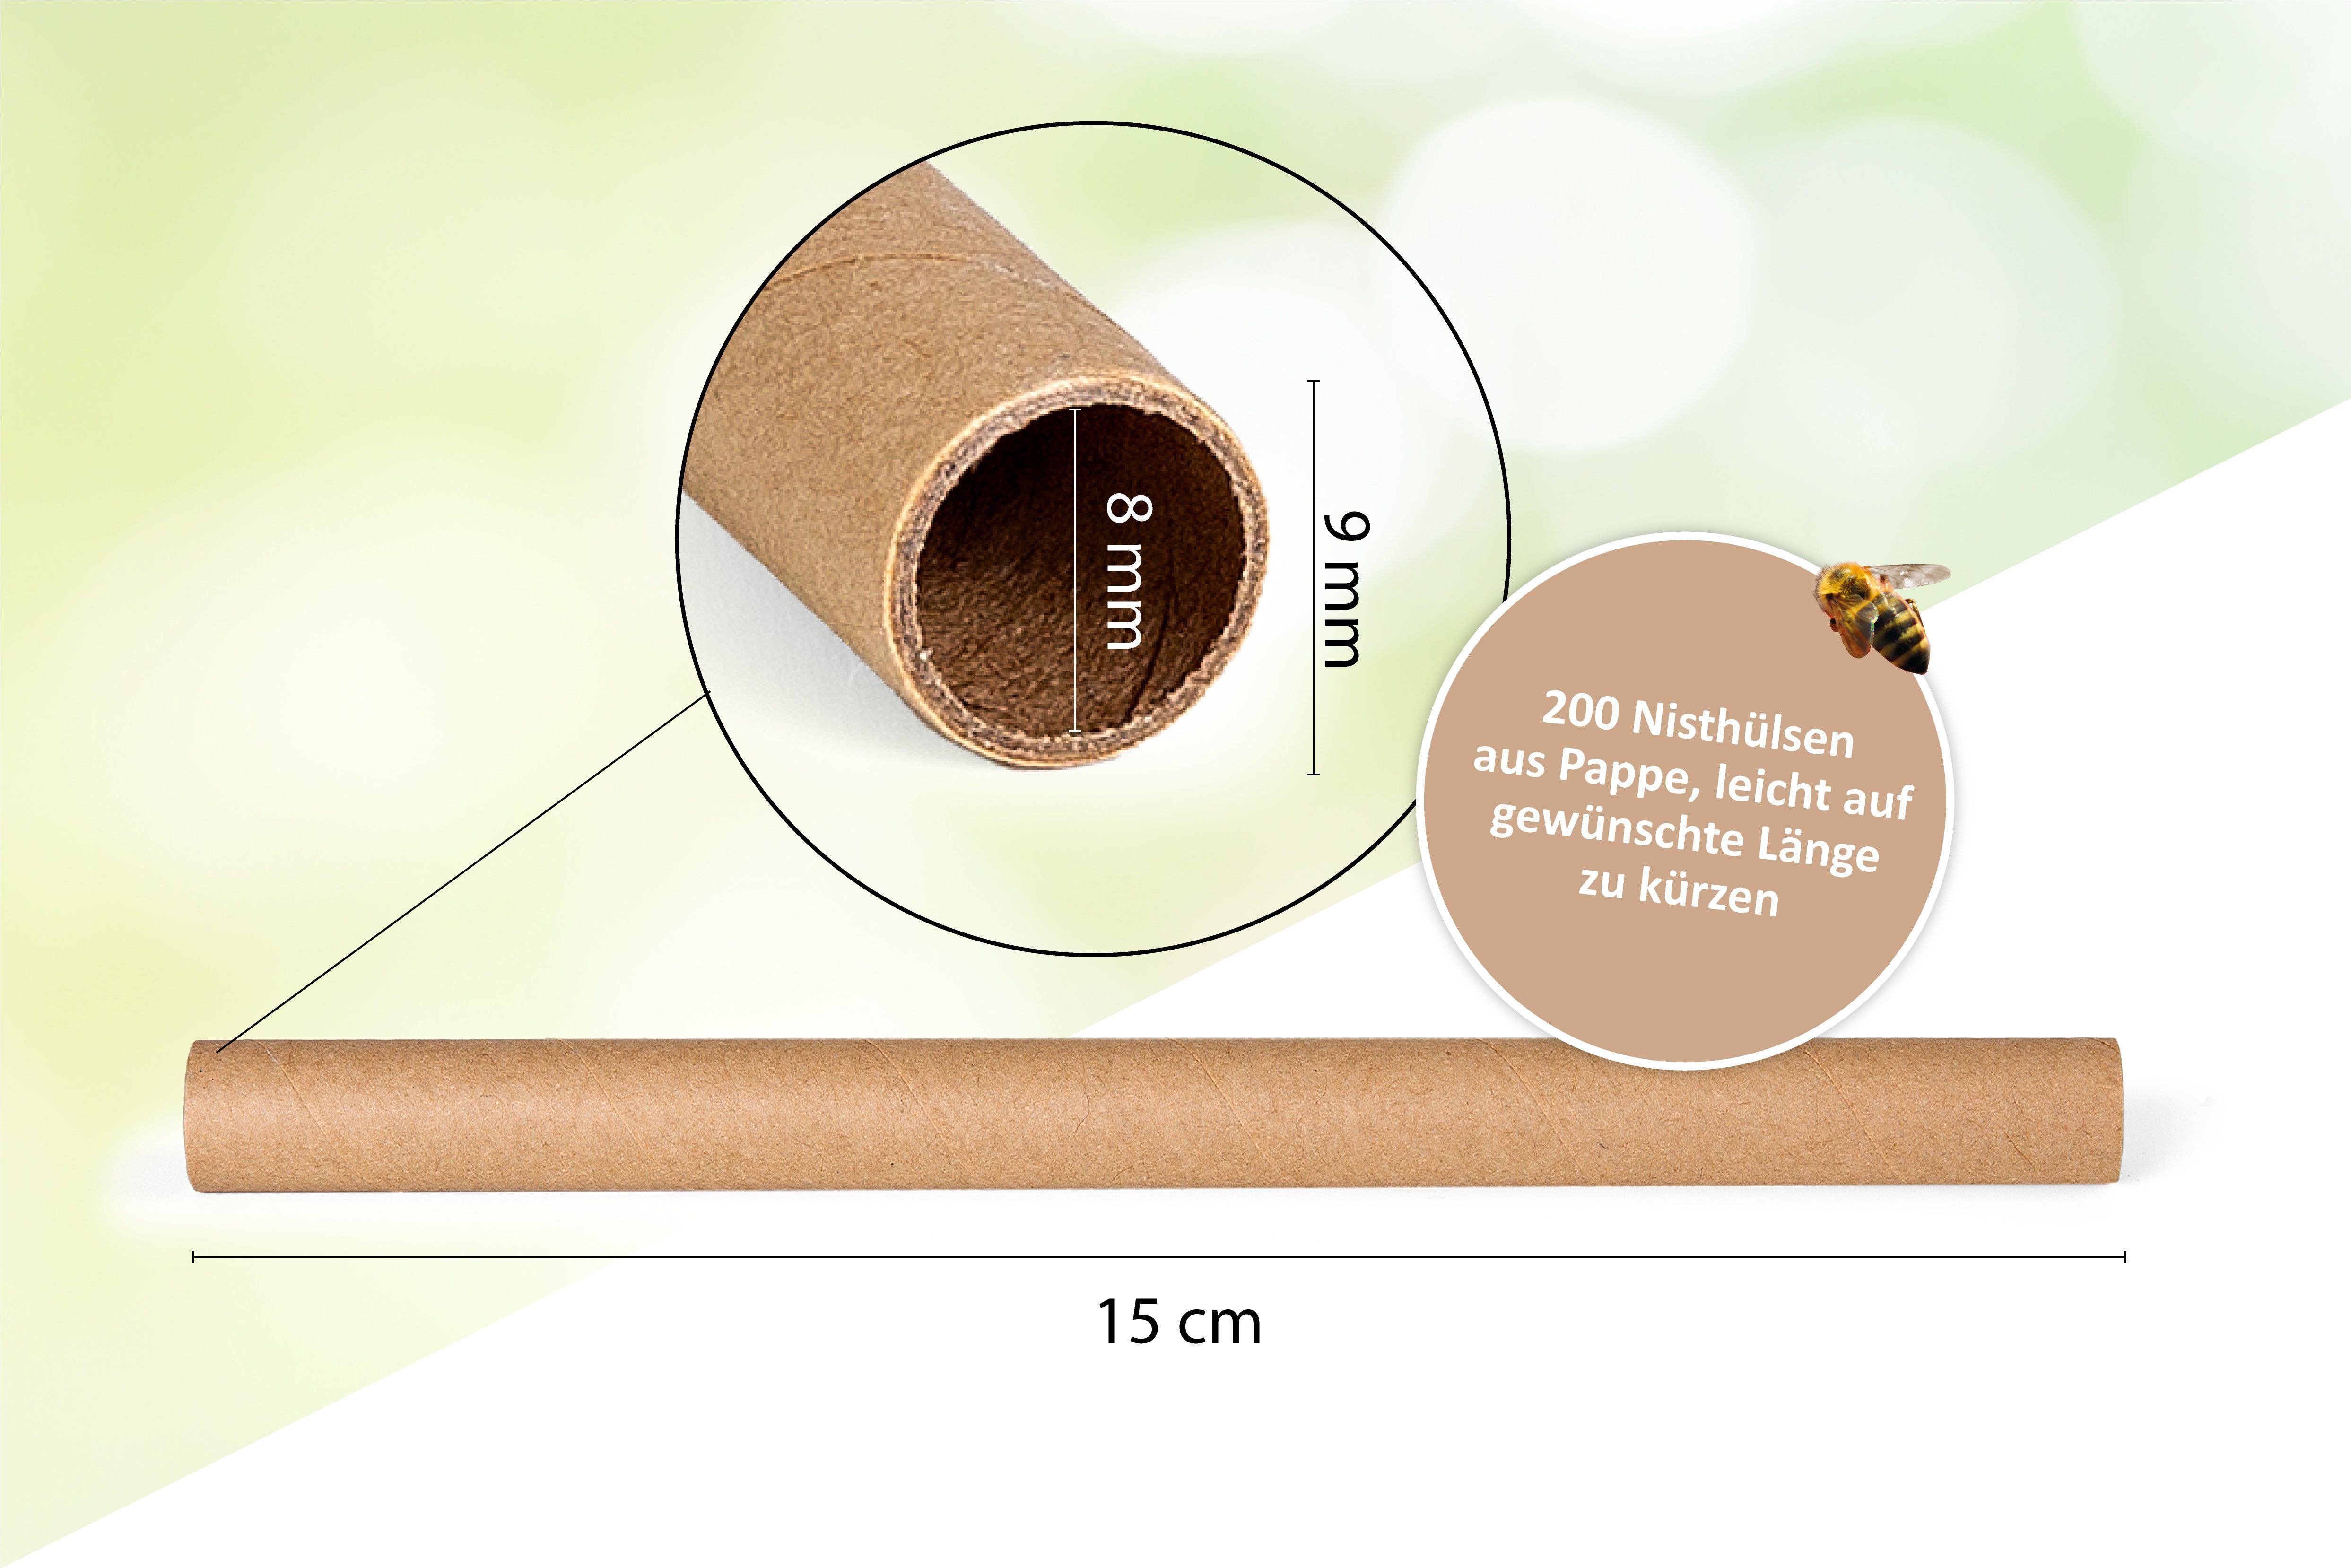 Cult at Bienen Ø 8 Bauen mm und - Wildbienen Füllmaterial Nisthilfe Basteln zum 200 Nisthülsen Home Insektenhotel